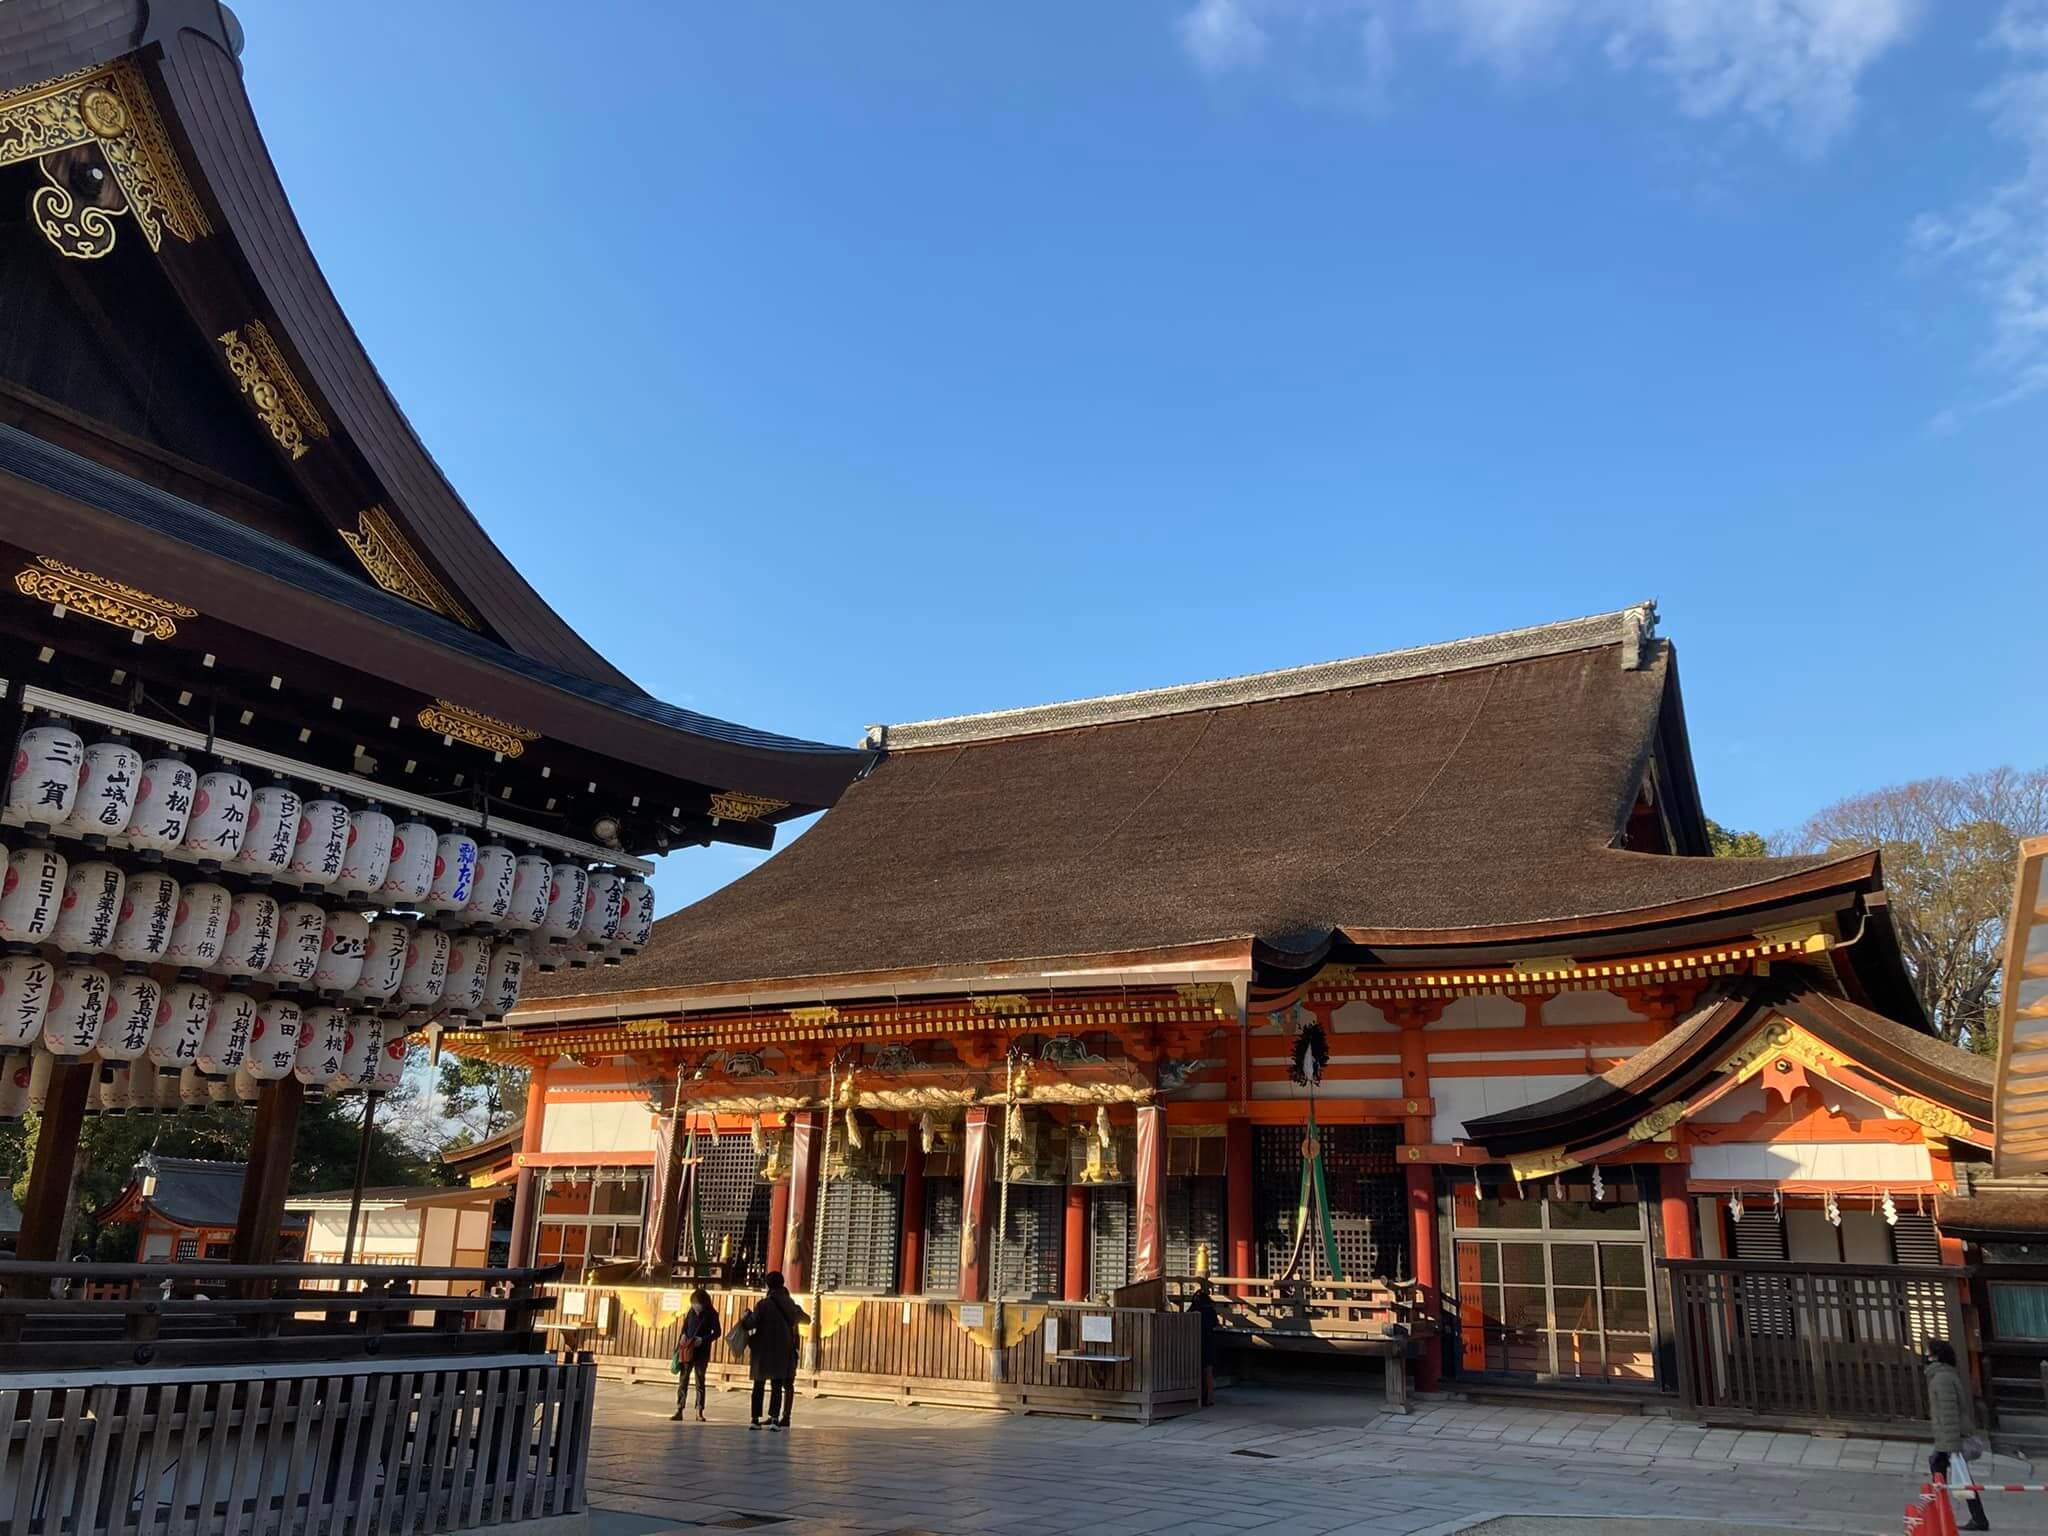 八坂神社本殿と舞殿を撮影した写真